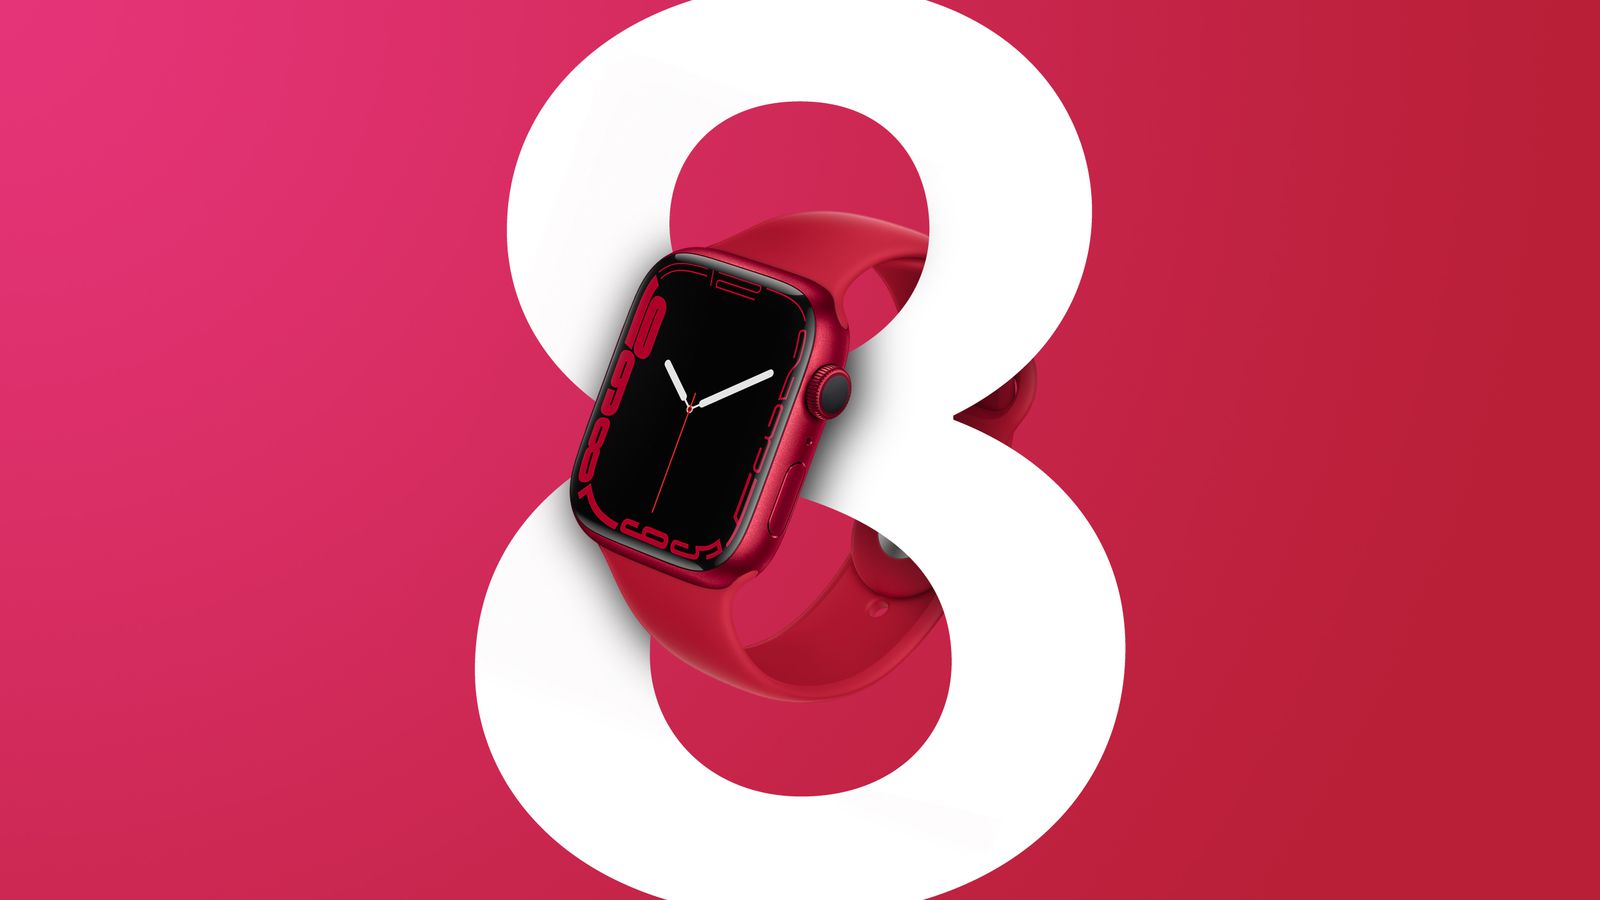 Jaki będzie nowy Apple Watch 8? Czy ich dizajn się zmieni? Na jakie nowe funkcje możemy się spodziewać?